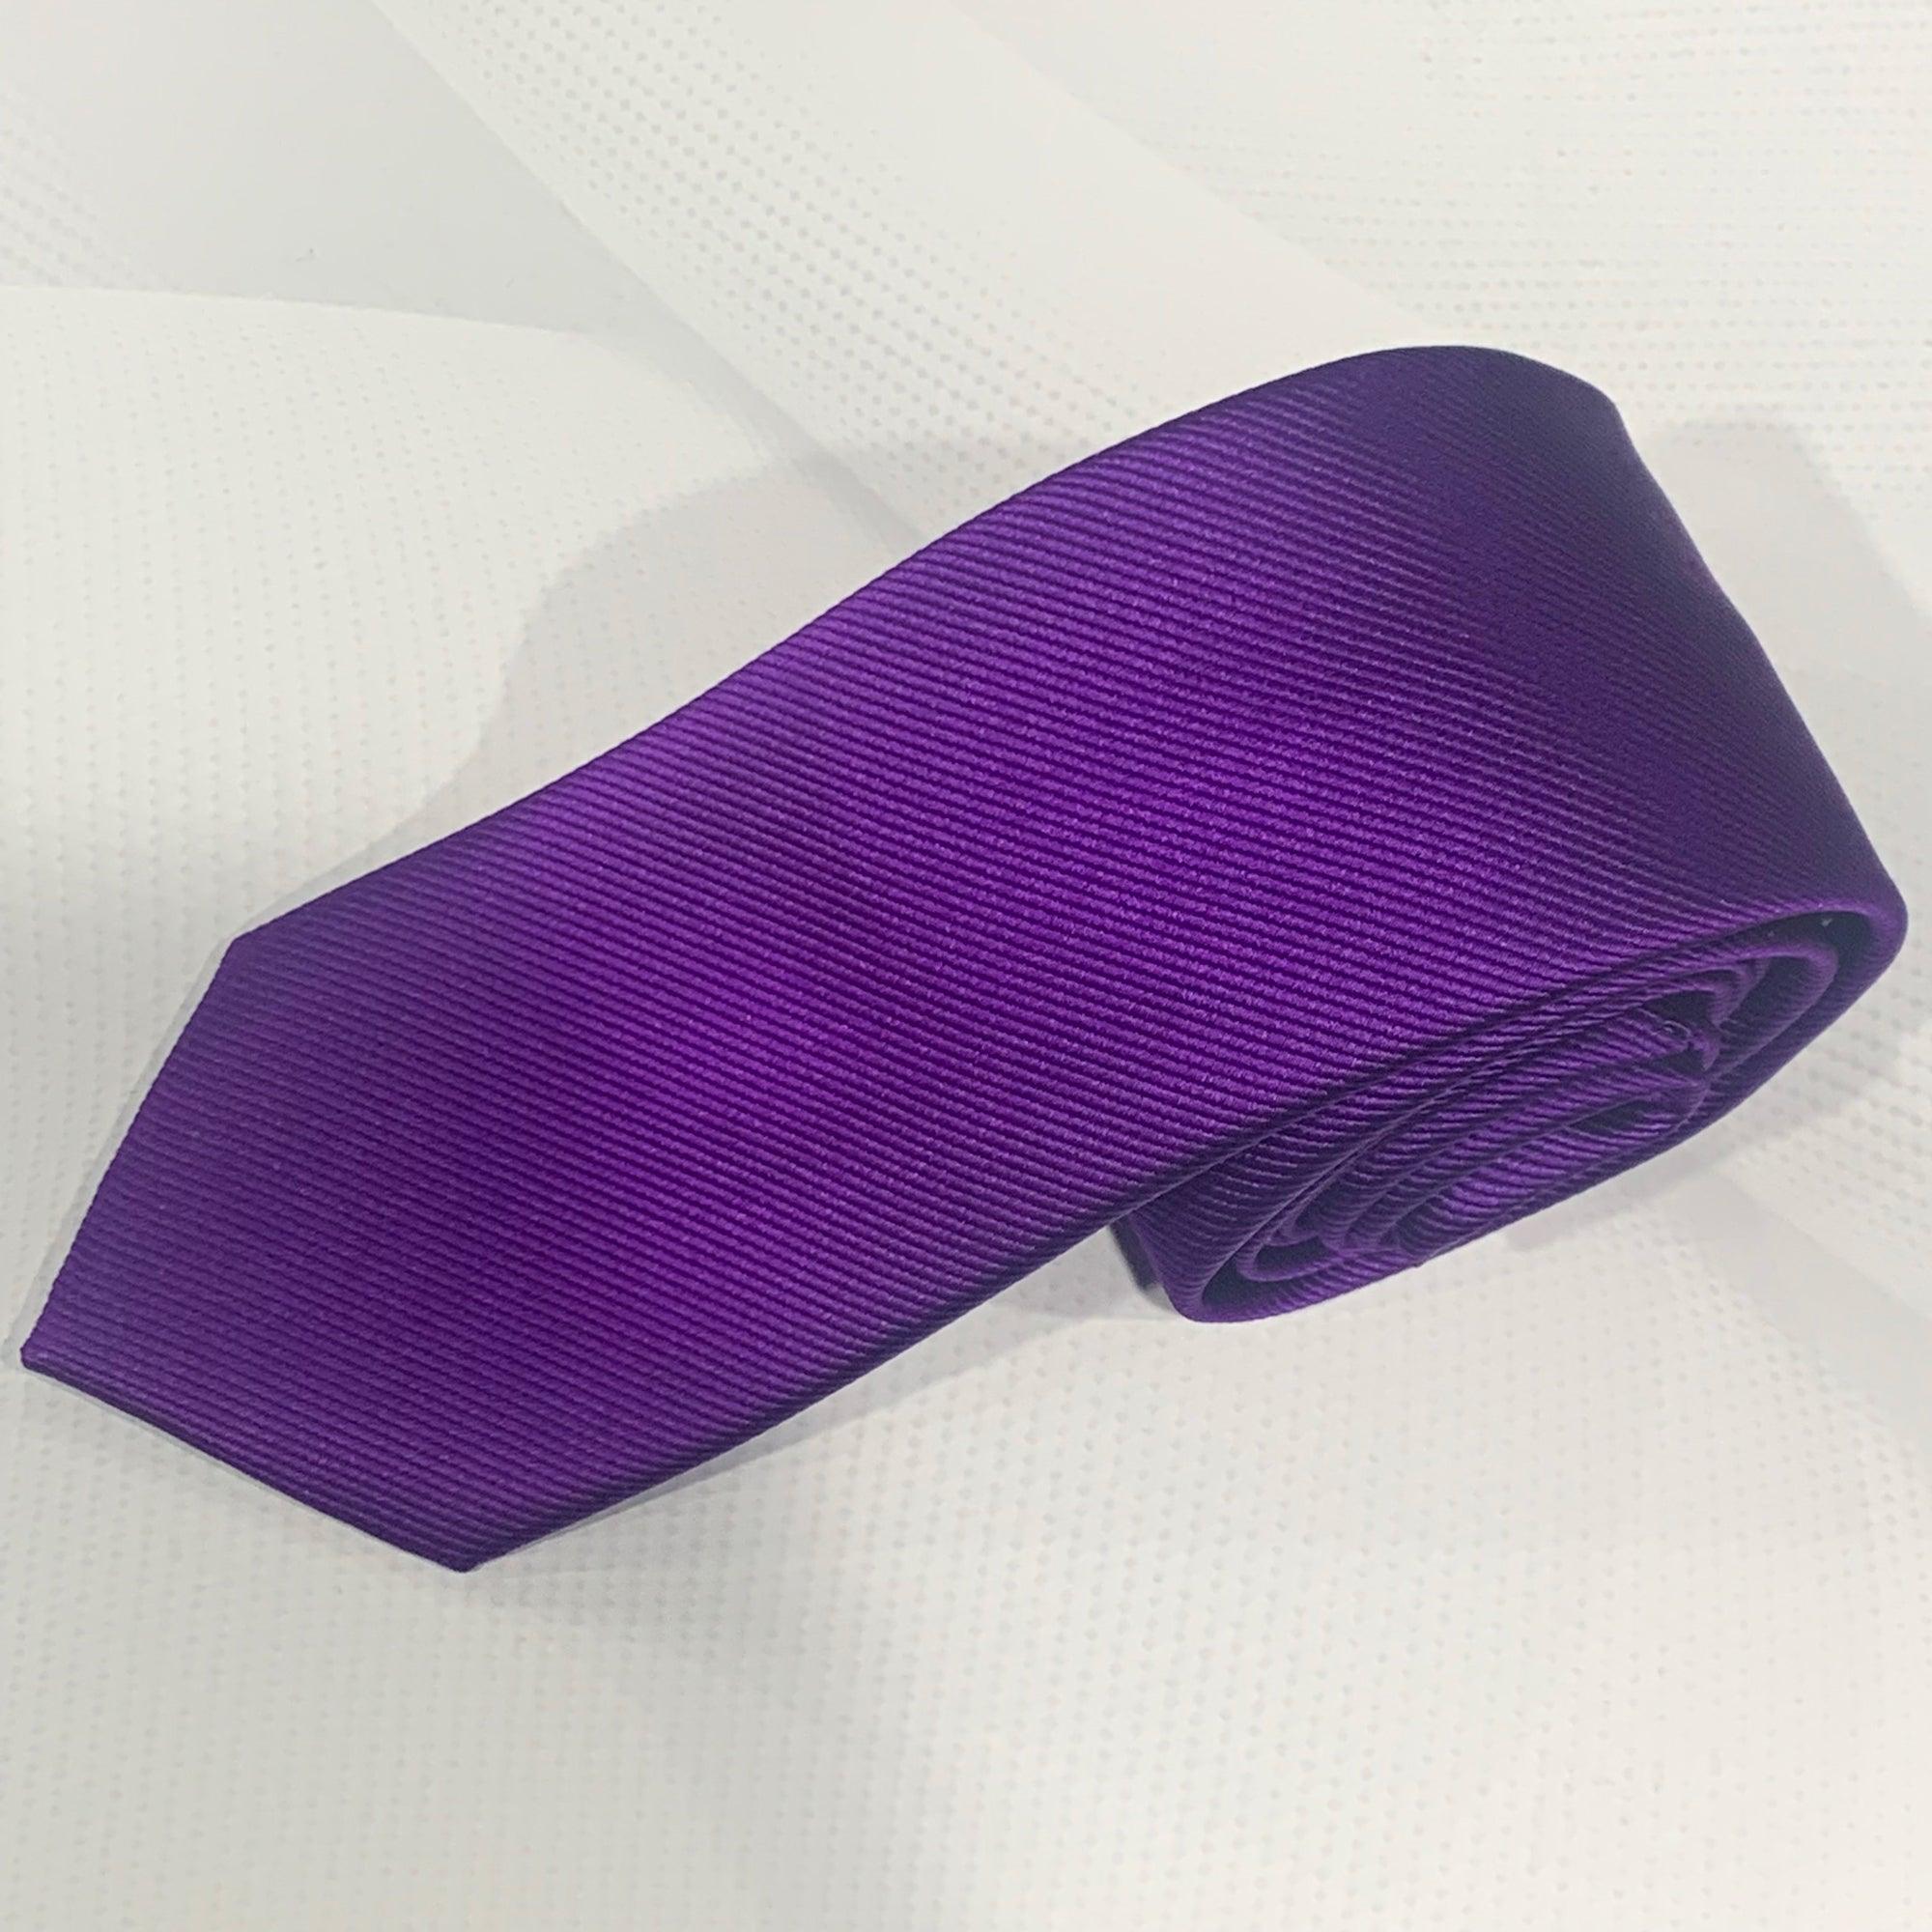 X18395-6 Silk Tie - Harrys for Menswear